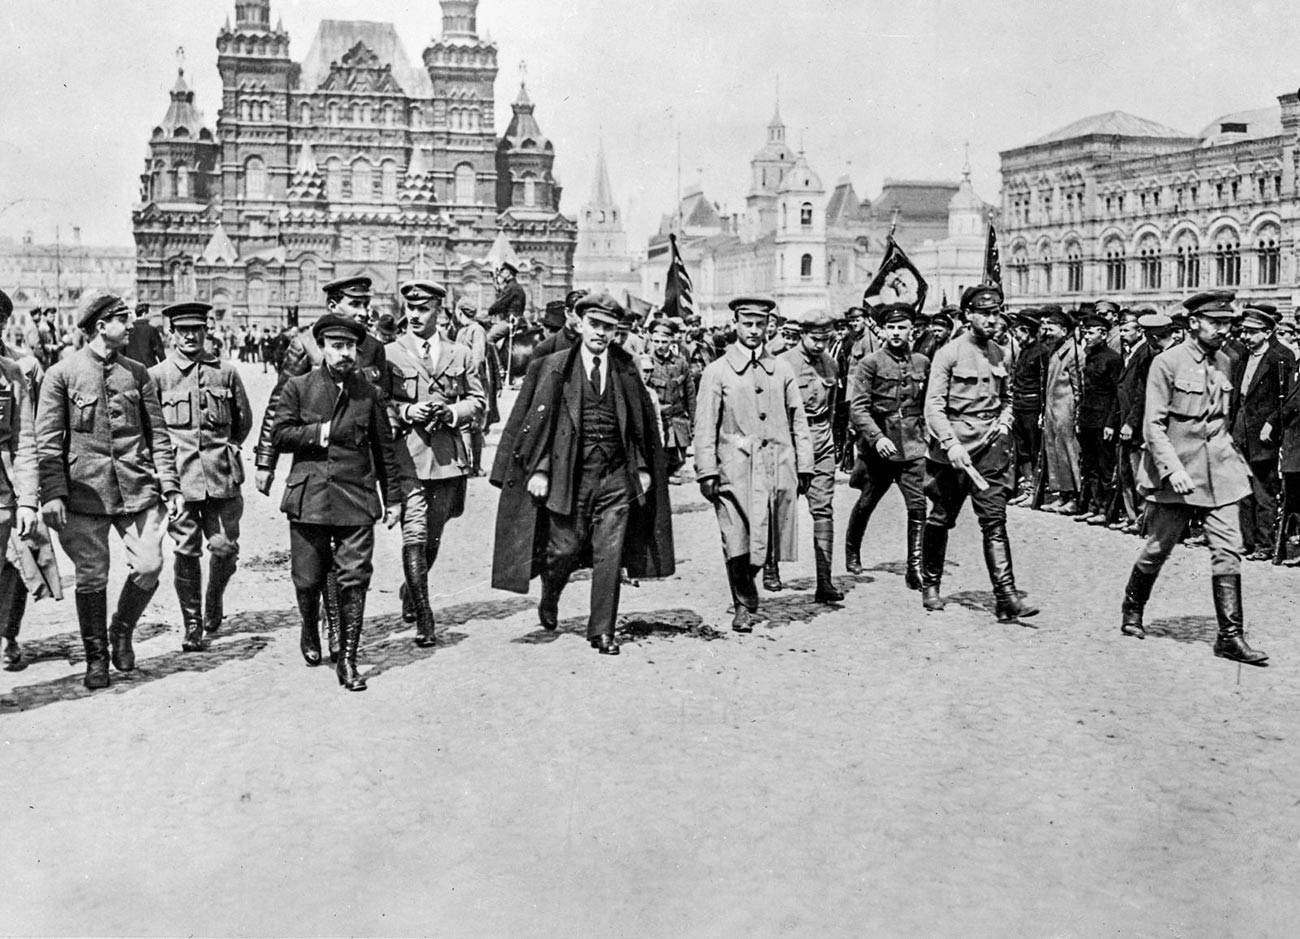 Pmimpin revolusioner proletariat Soviet Vladimir Lenin (tengah), berjalan bersama sekelompok komandan di Lapangan Merah.